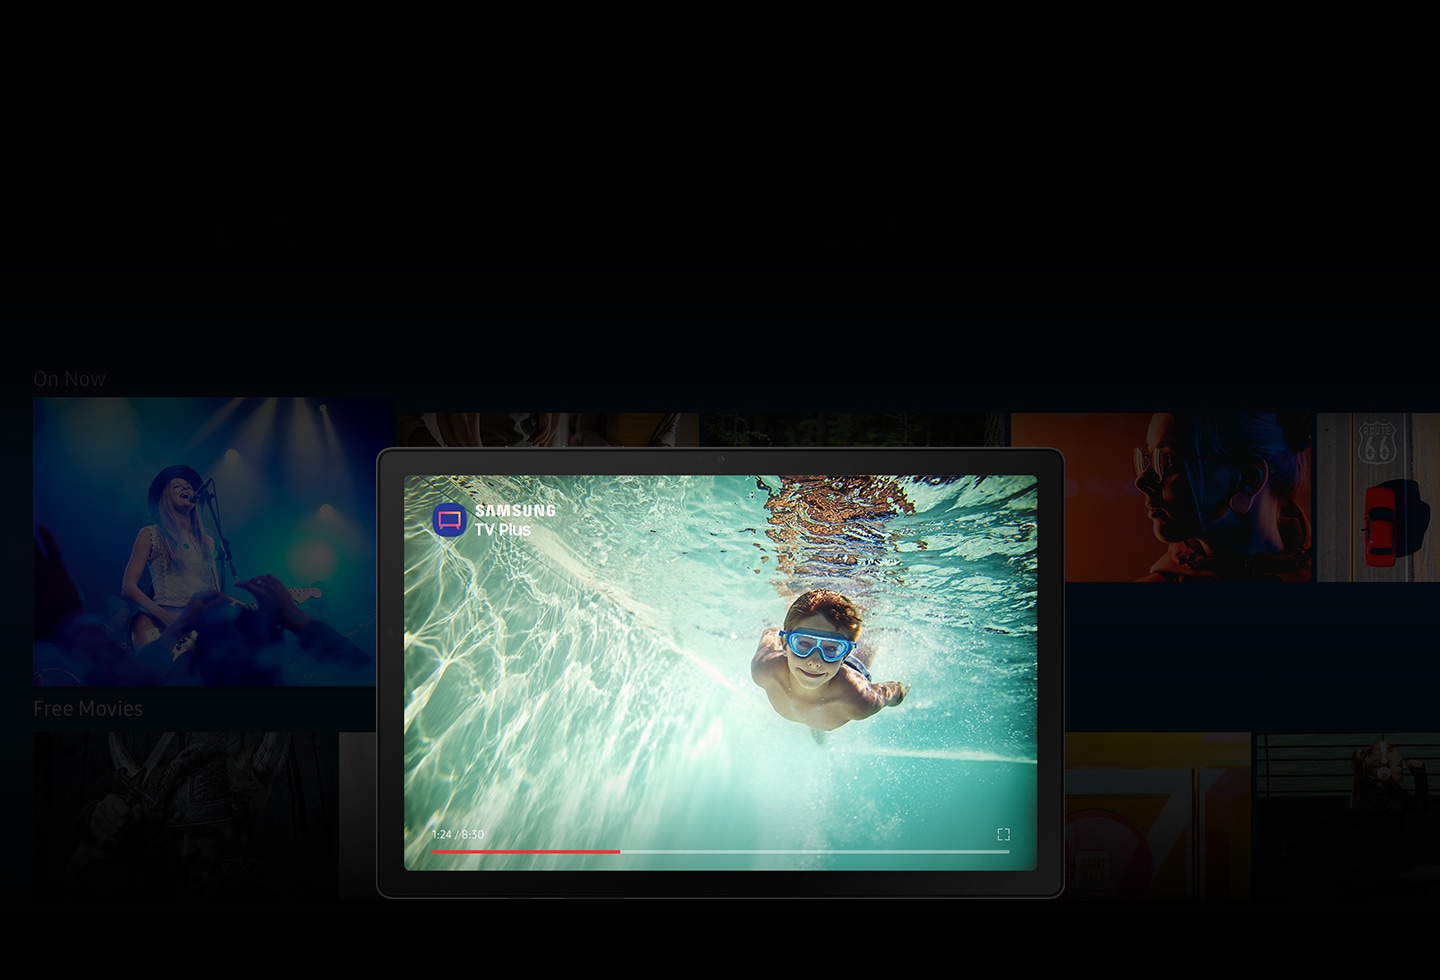 Aplikacija Samsung TV Plus otvorena je na uređaju Galaxy Tab A8. Uz mnoge zamućene slike iz serija i filmova u pozadini, na zaslonu je prikazan dječak koji pliva pod vodom s ikonom aplikacije i logotipom Samsung TV Plus.